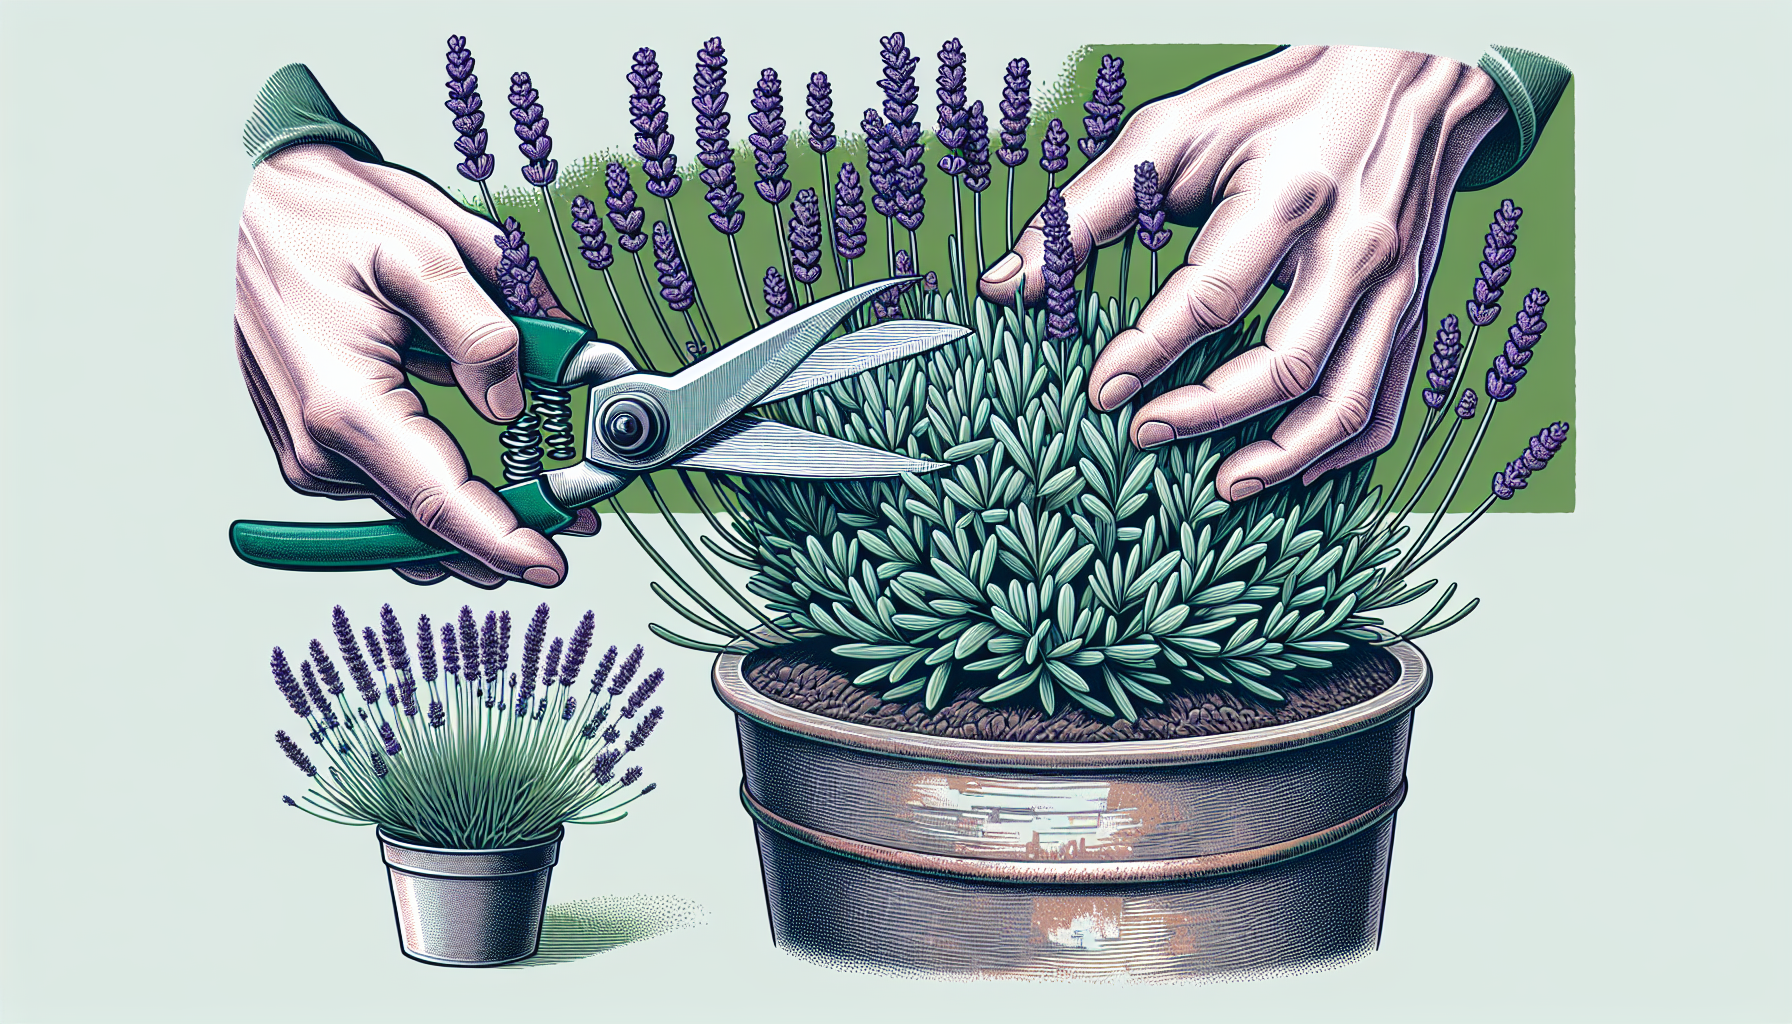 Illustration of pruning lavender plants